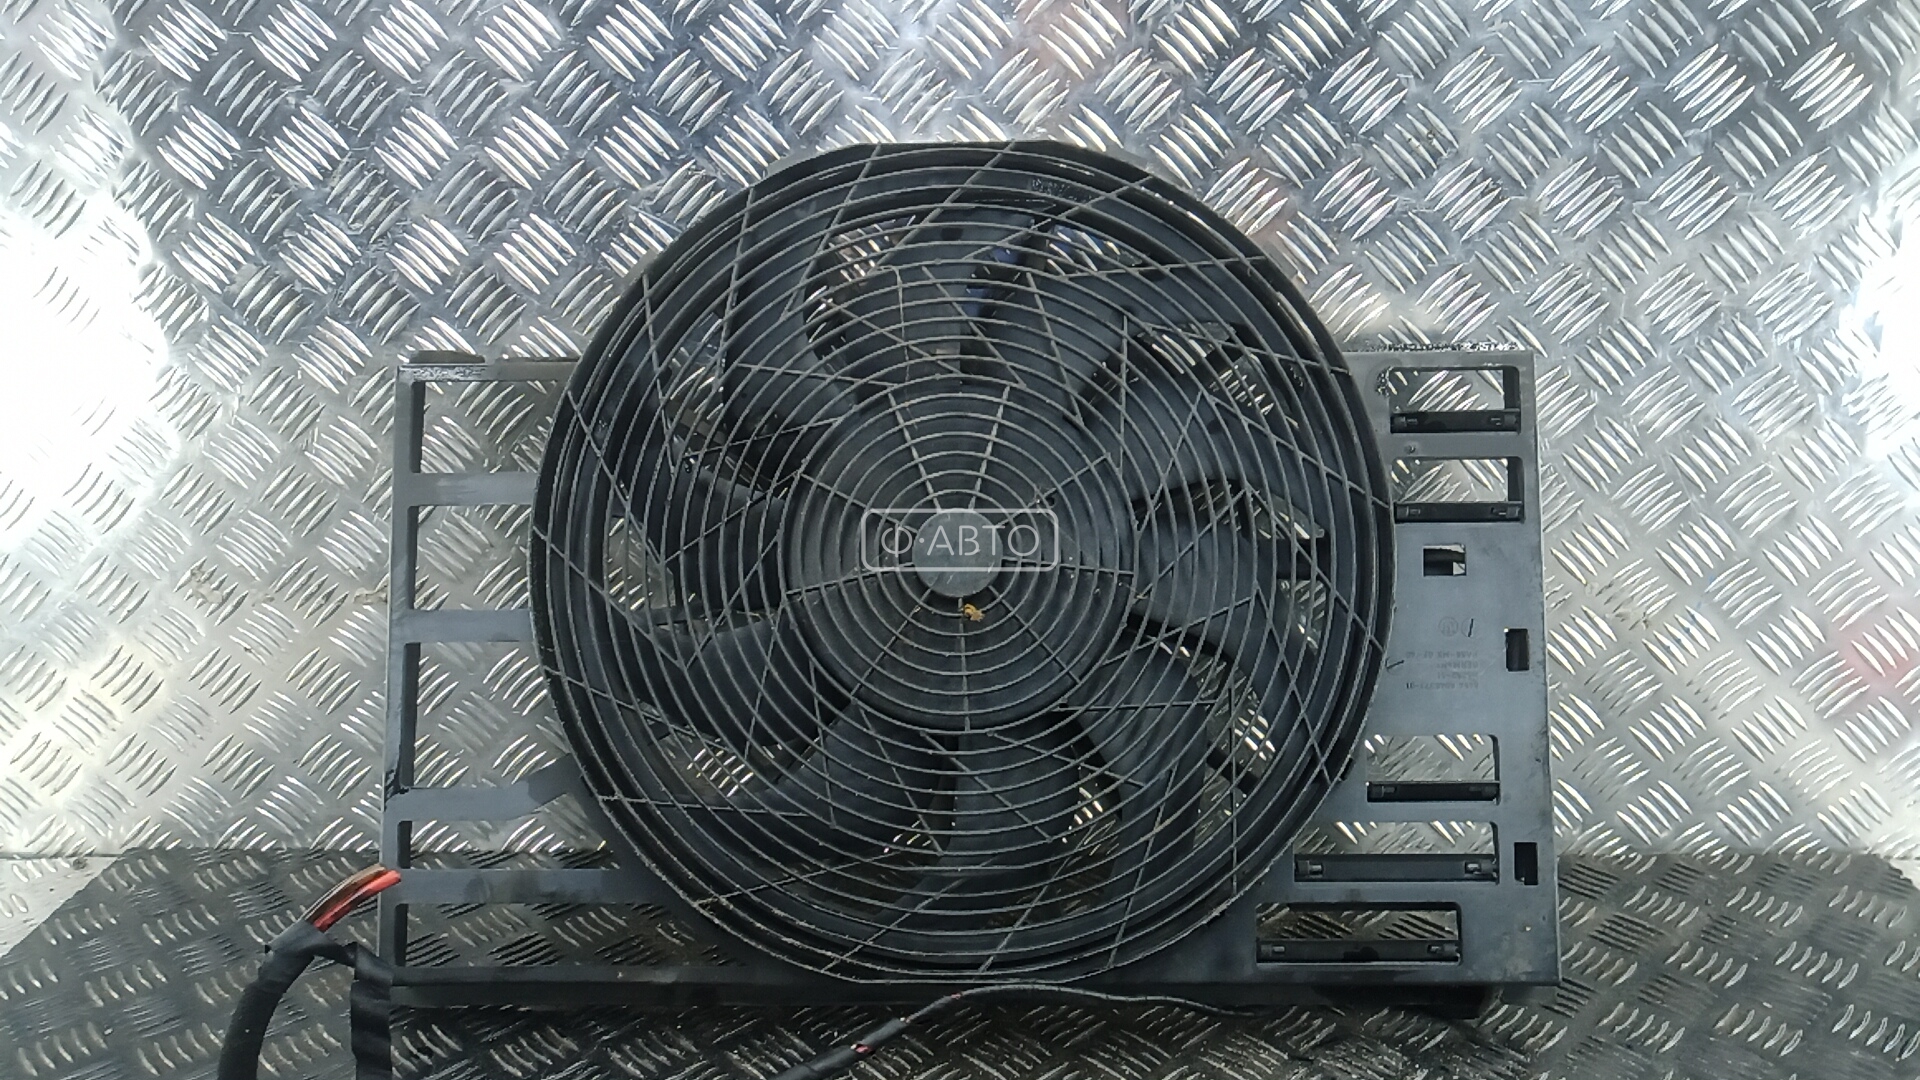 Вентилятор радиатора BMW 7